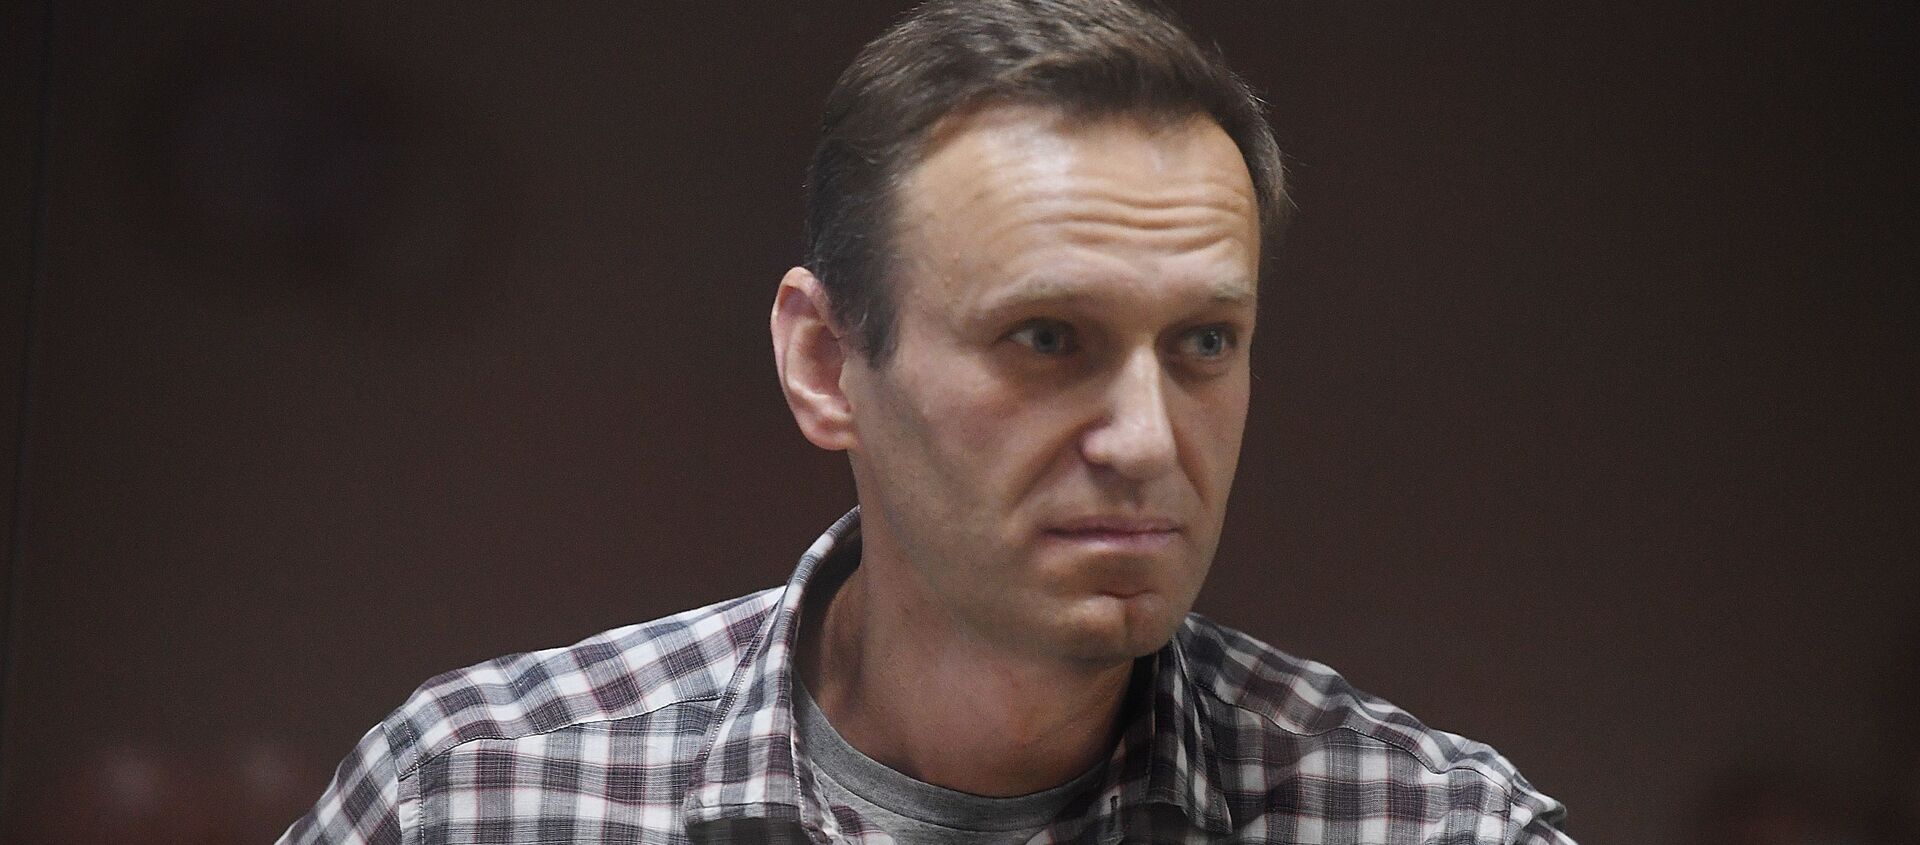 Алексей Навальный в зале суда - Sputnik Латвия, 1920, 20.02.2021